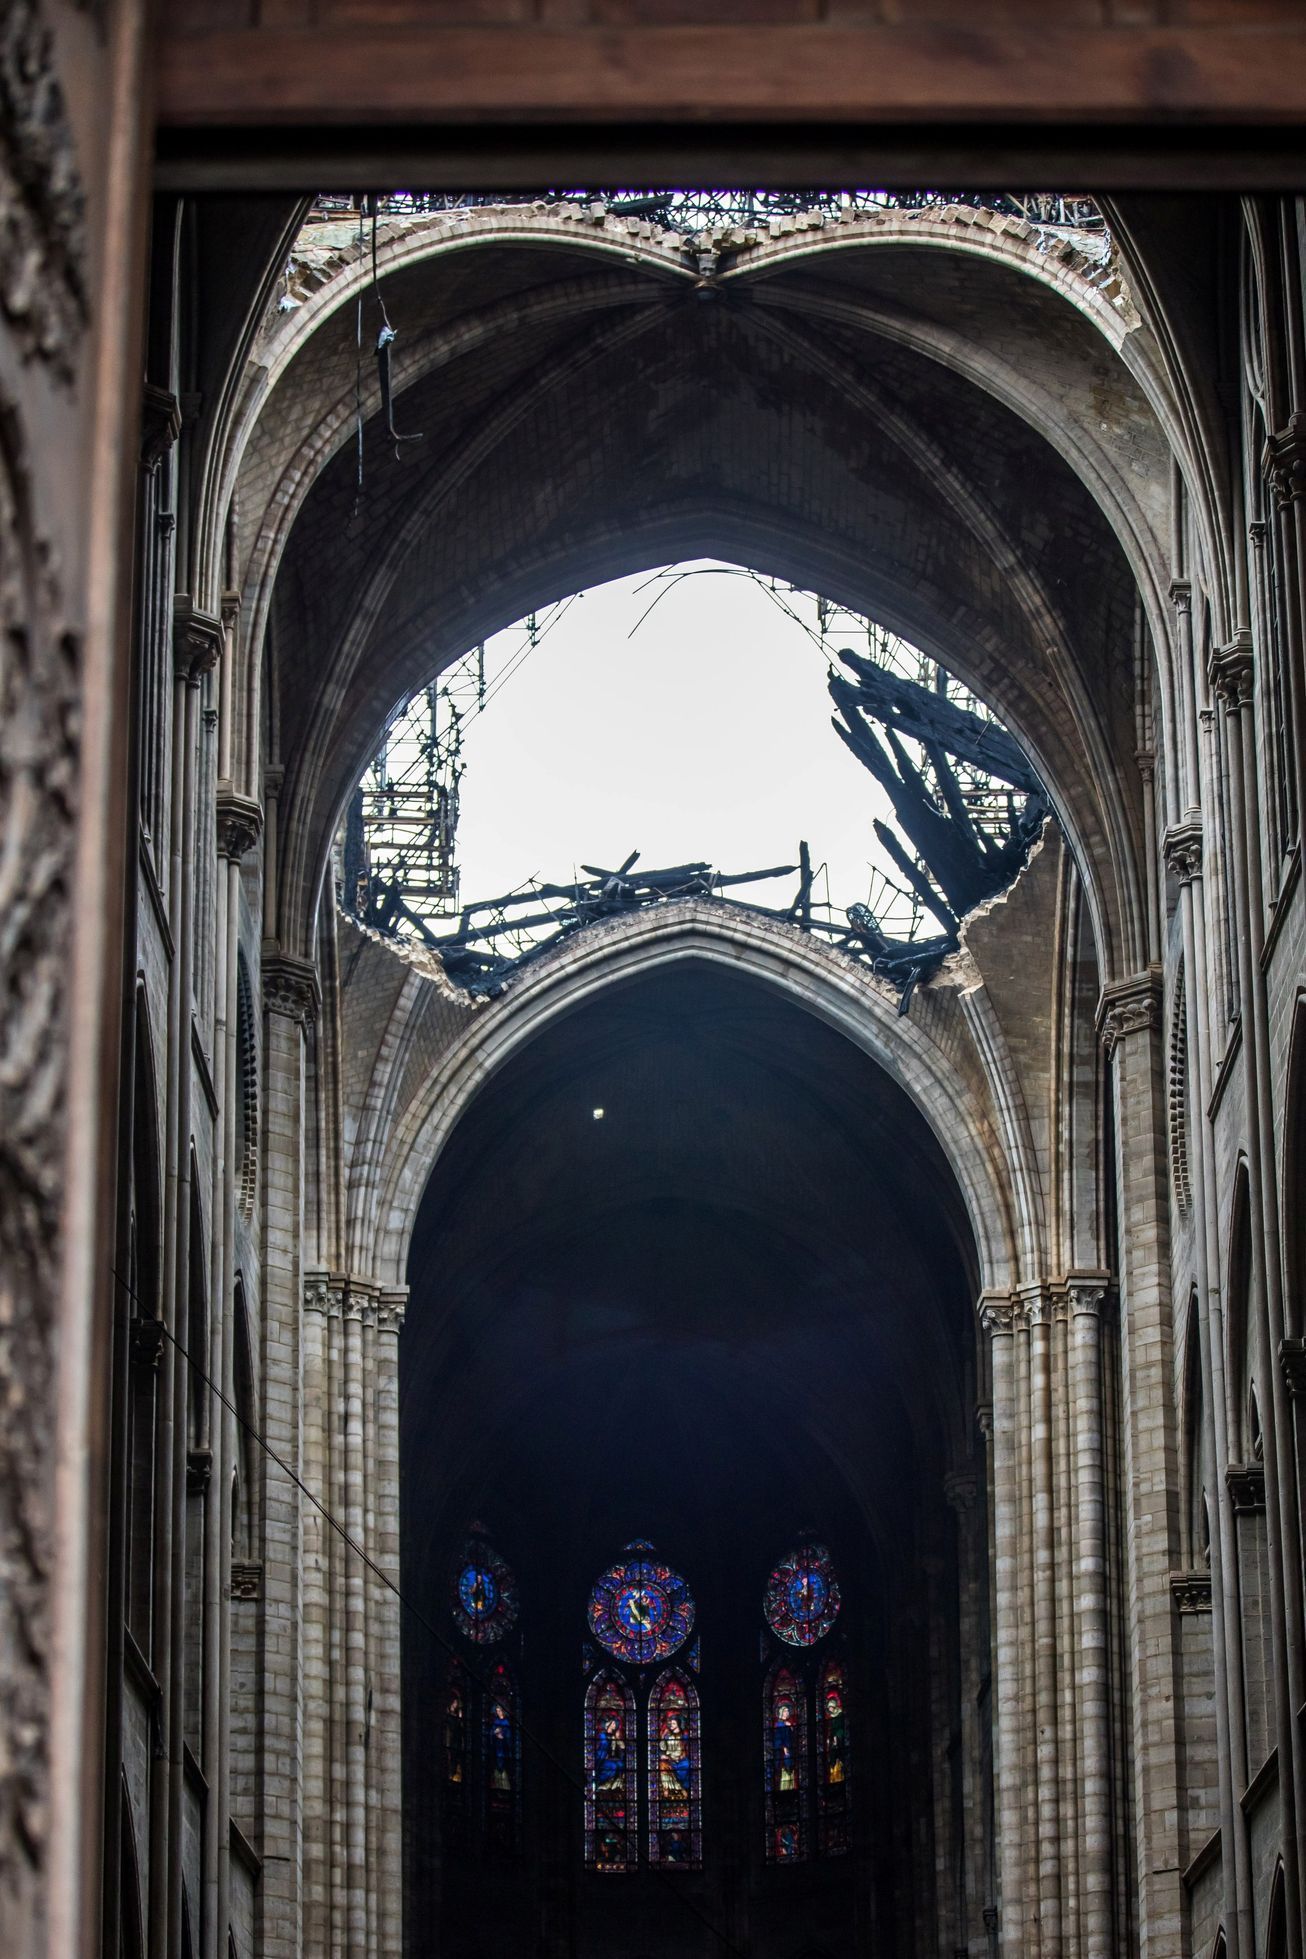 Notre-Dame po požáru